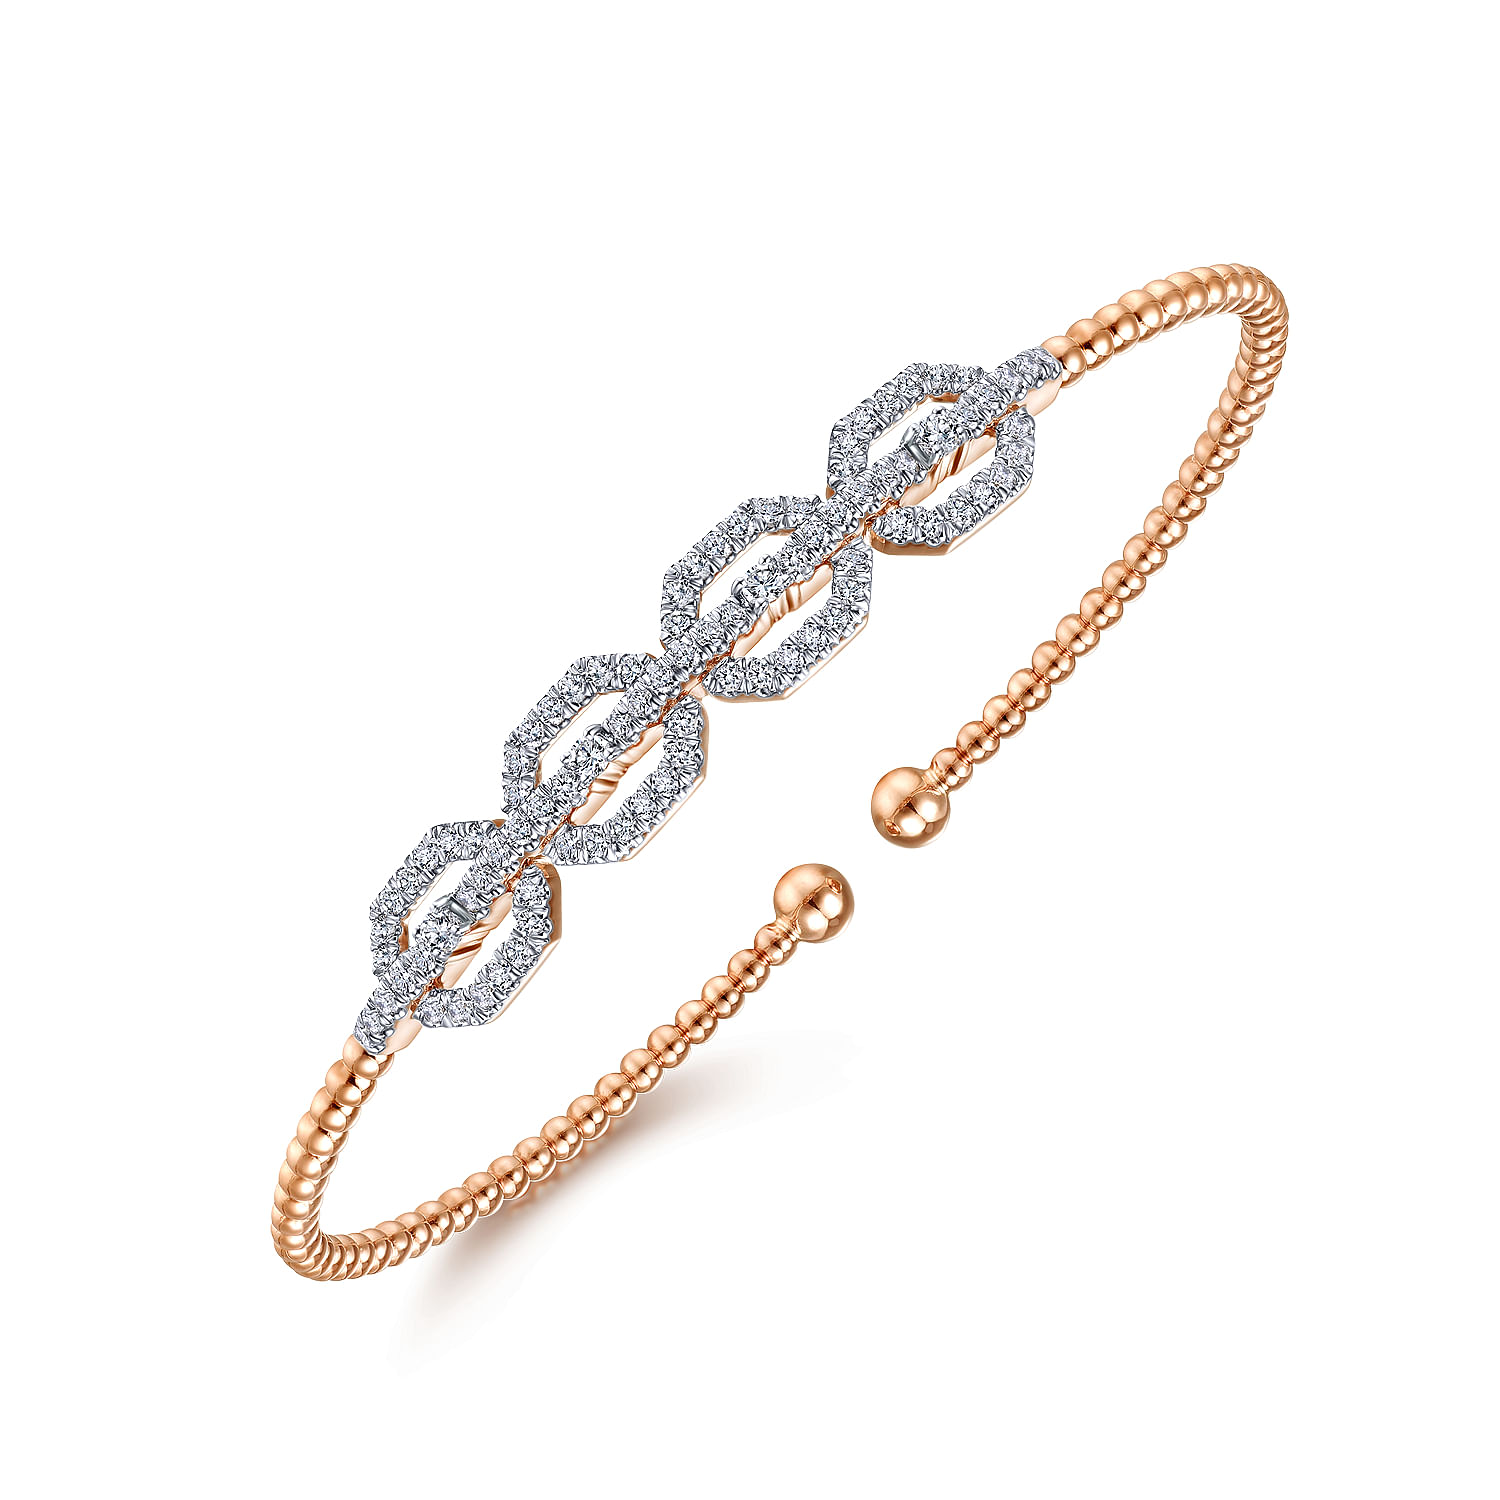 14K Rose Gold Bujukan Bead Cuff Bracelet with Diamond Pav¿ª Links